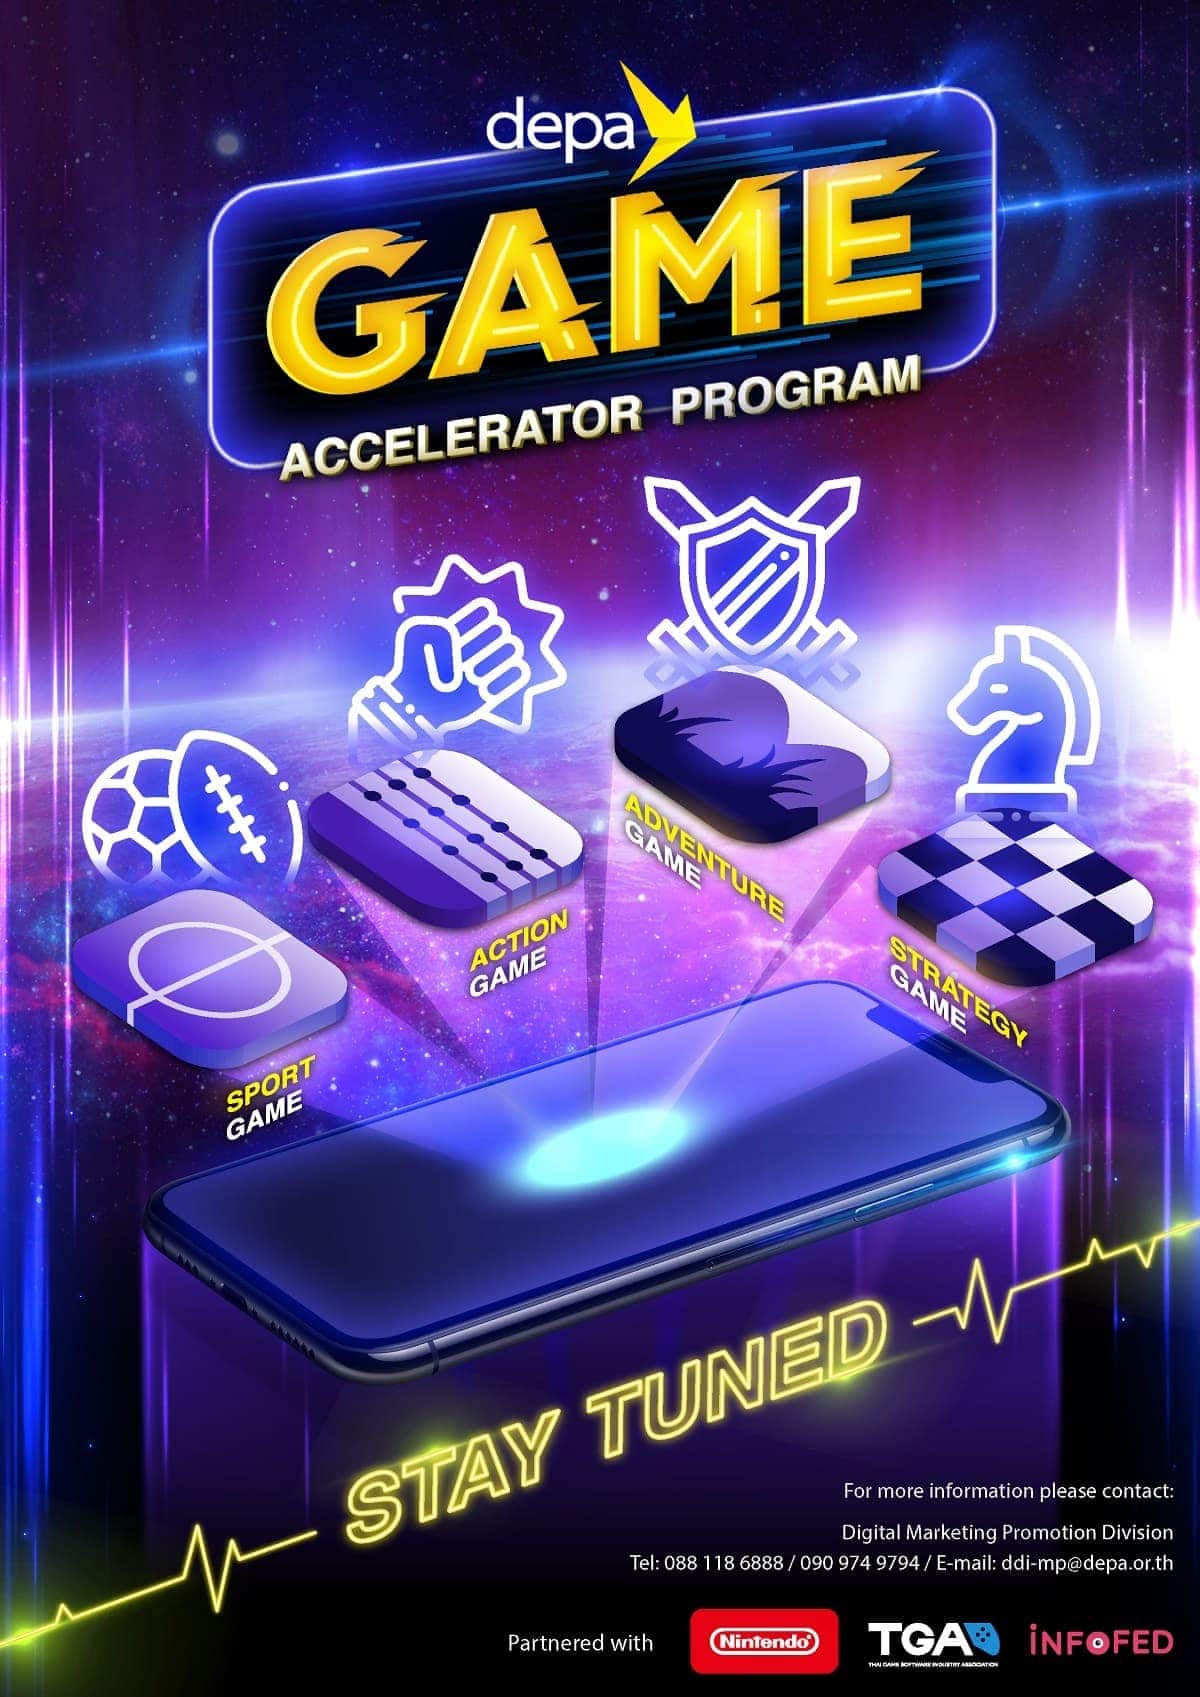 depa ผนึก TGA - อินโฟเฟด ประกาศผลสุดยอด 4 ทีมพัฒนาเกมสัญชาติไทย ในโครงการ depa Game Accelerator Program พร้อมปั้นสู่ระดับโลก 1